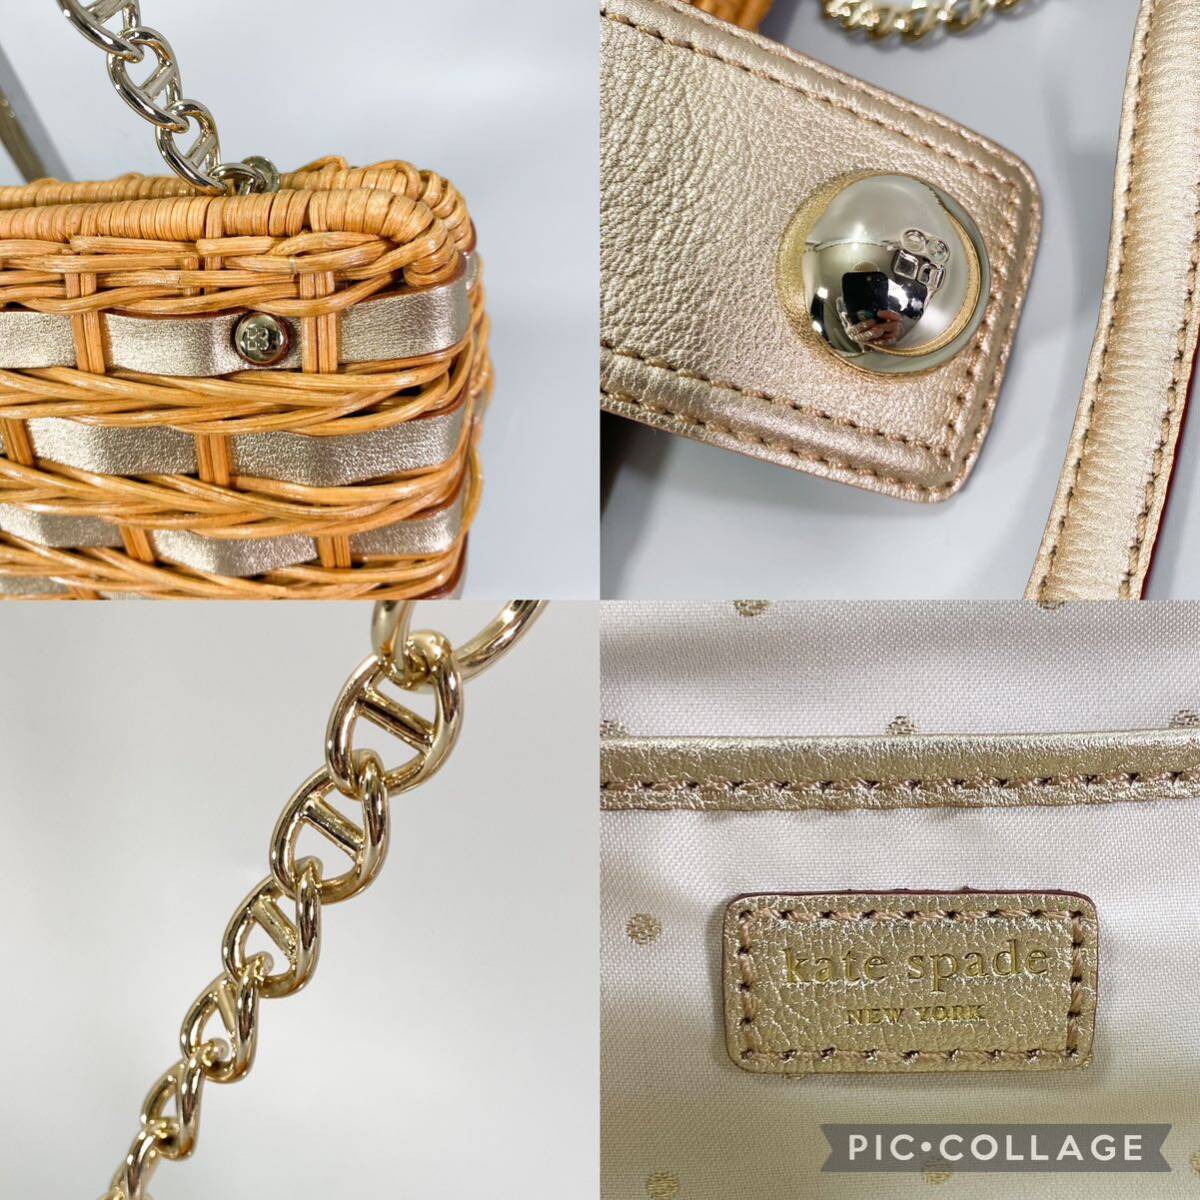 Kate Spade New York shoulder bag basket × leather Gold braided Kate Spade basket handbag chain bag shoulder ..